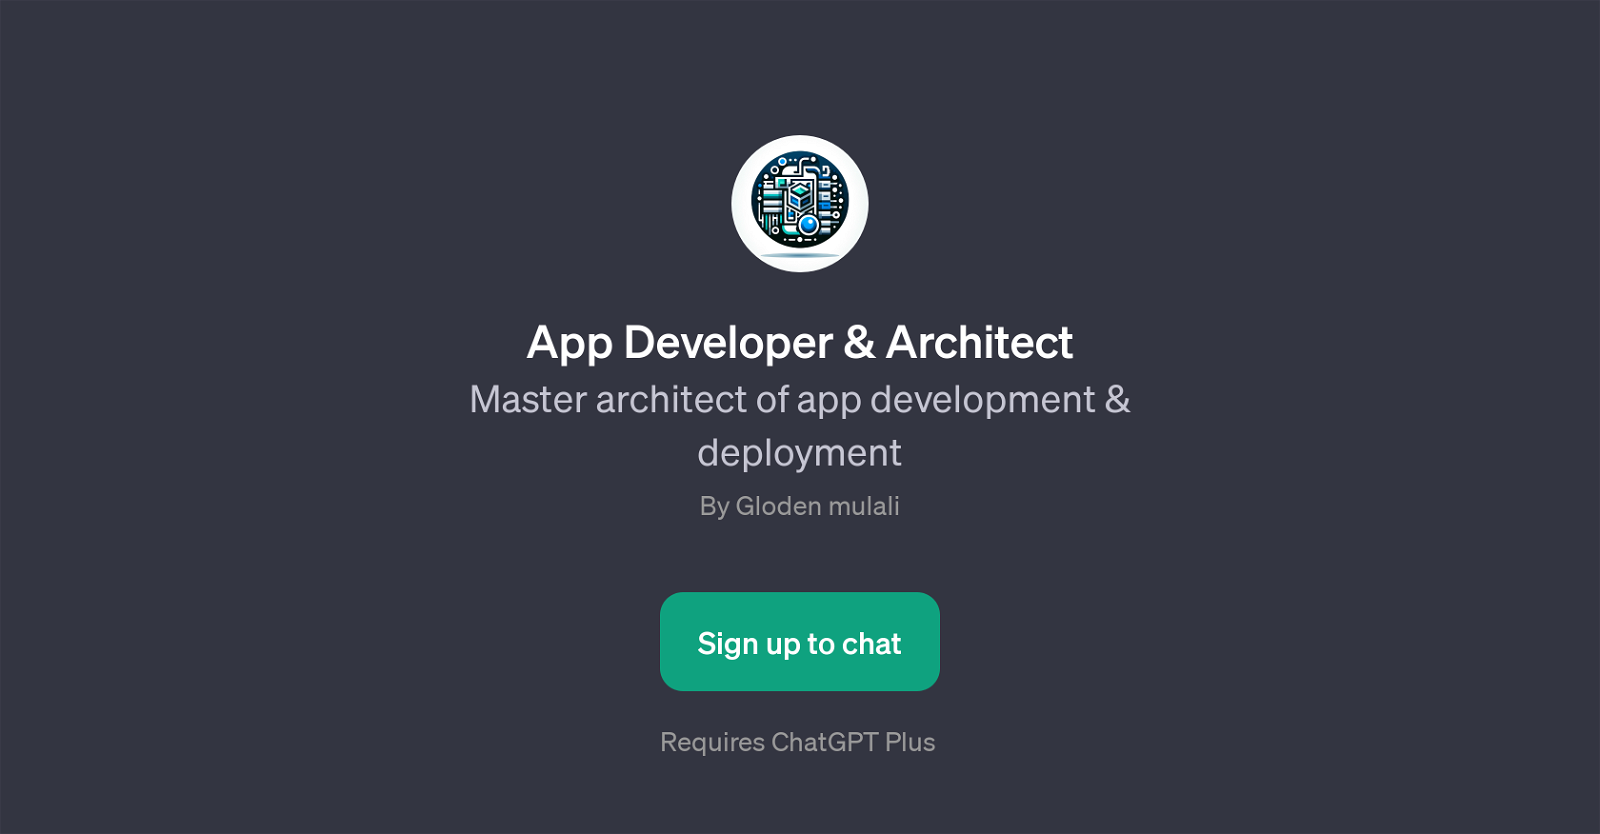 App Developer & Architect website